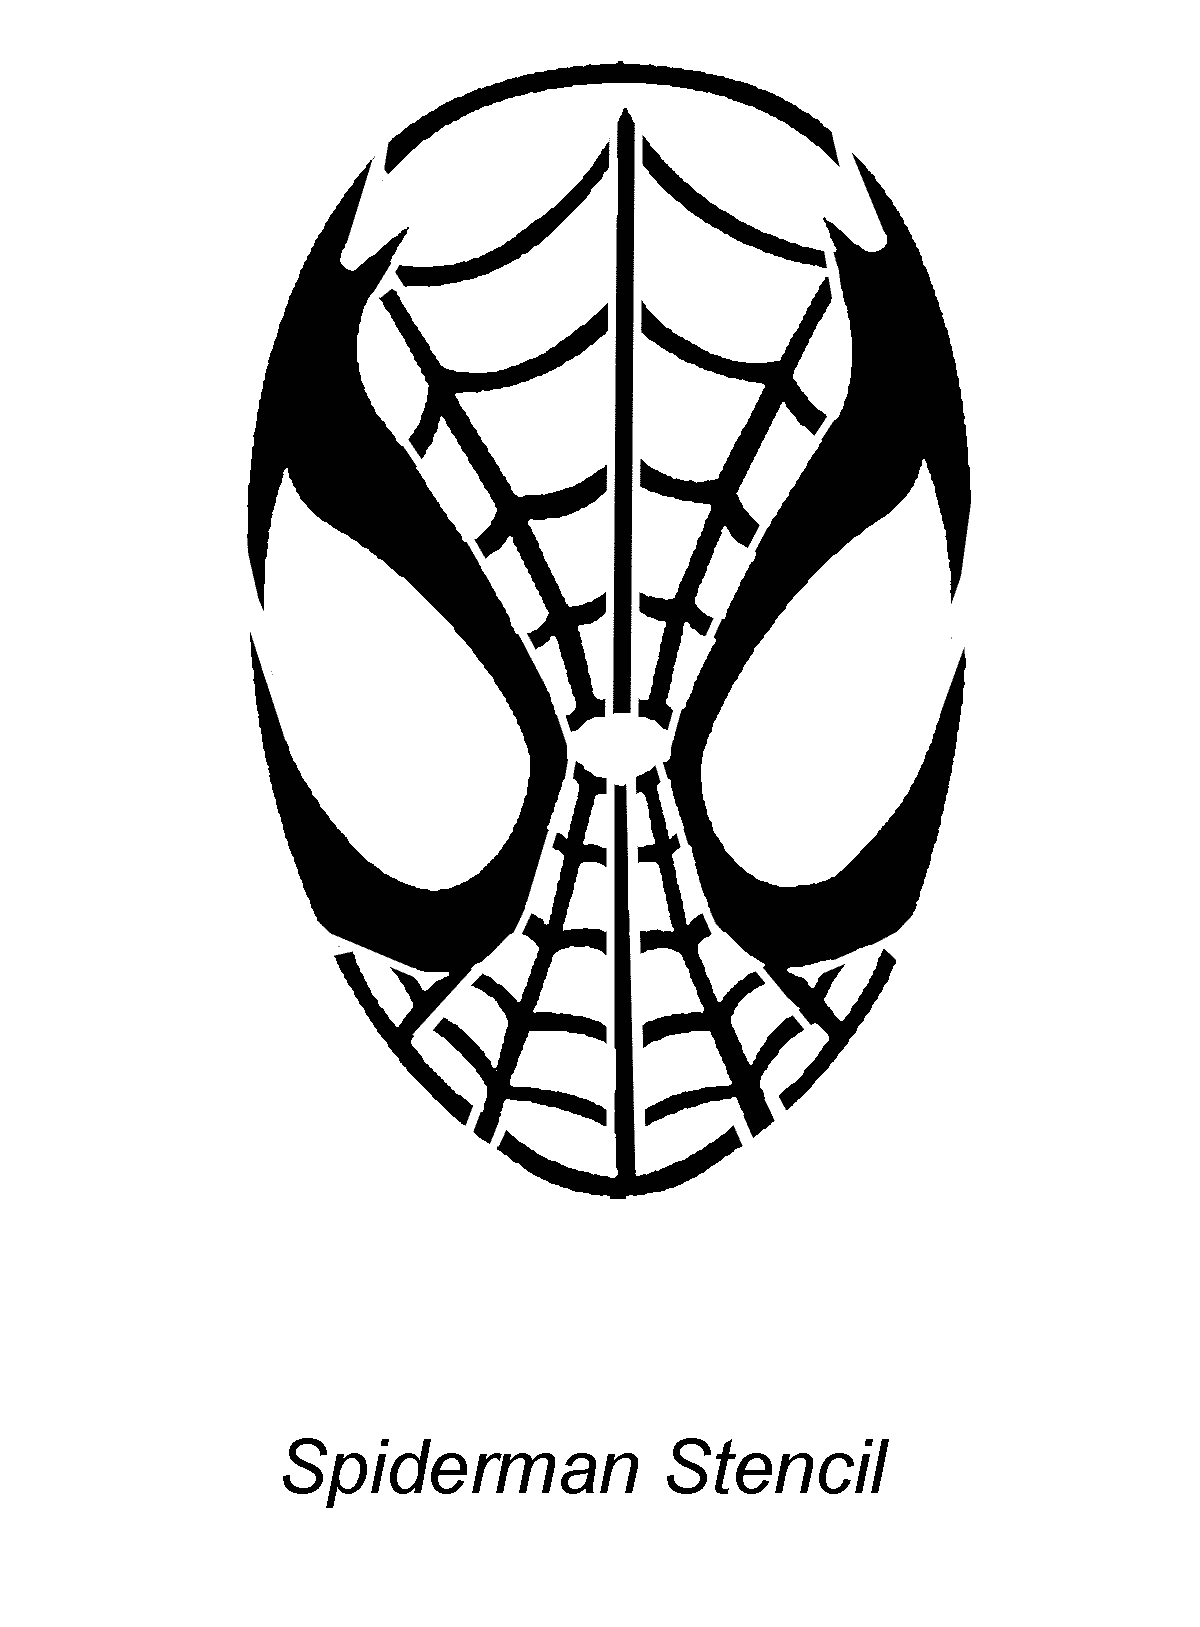 Spiderman   Stencil Outline Version